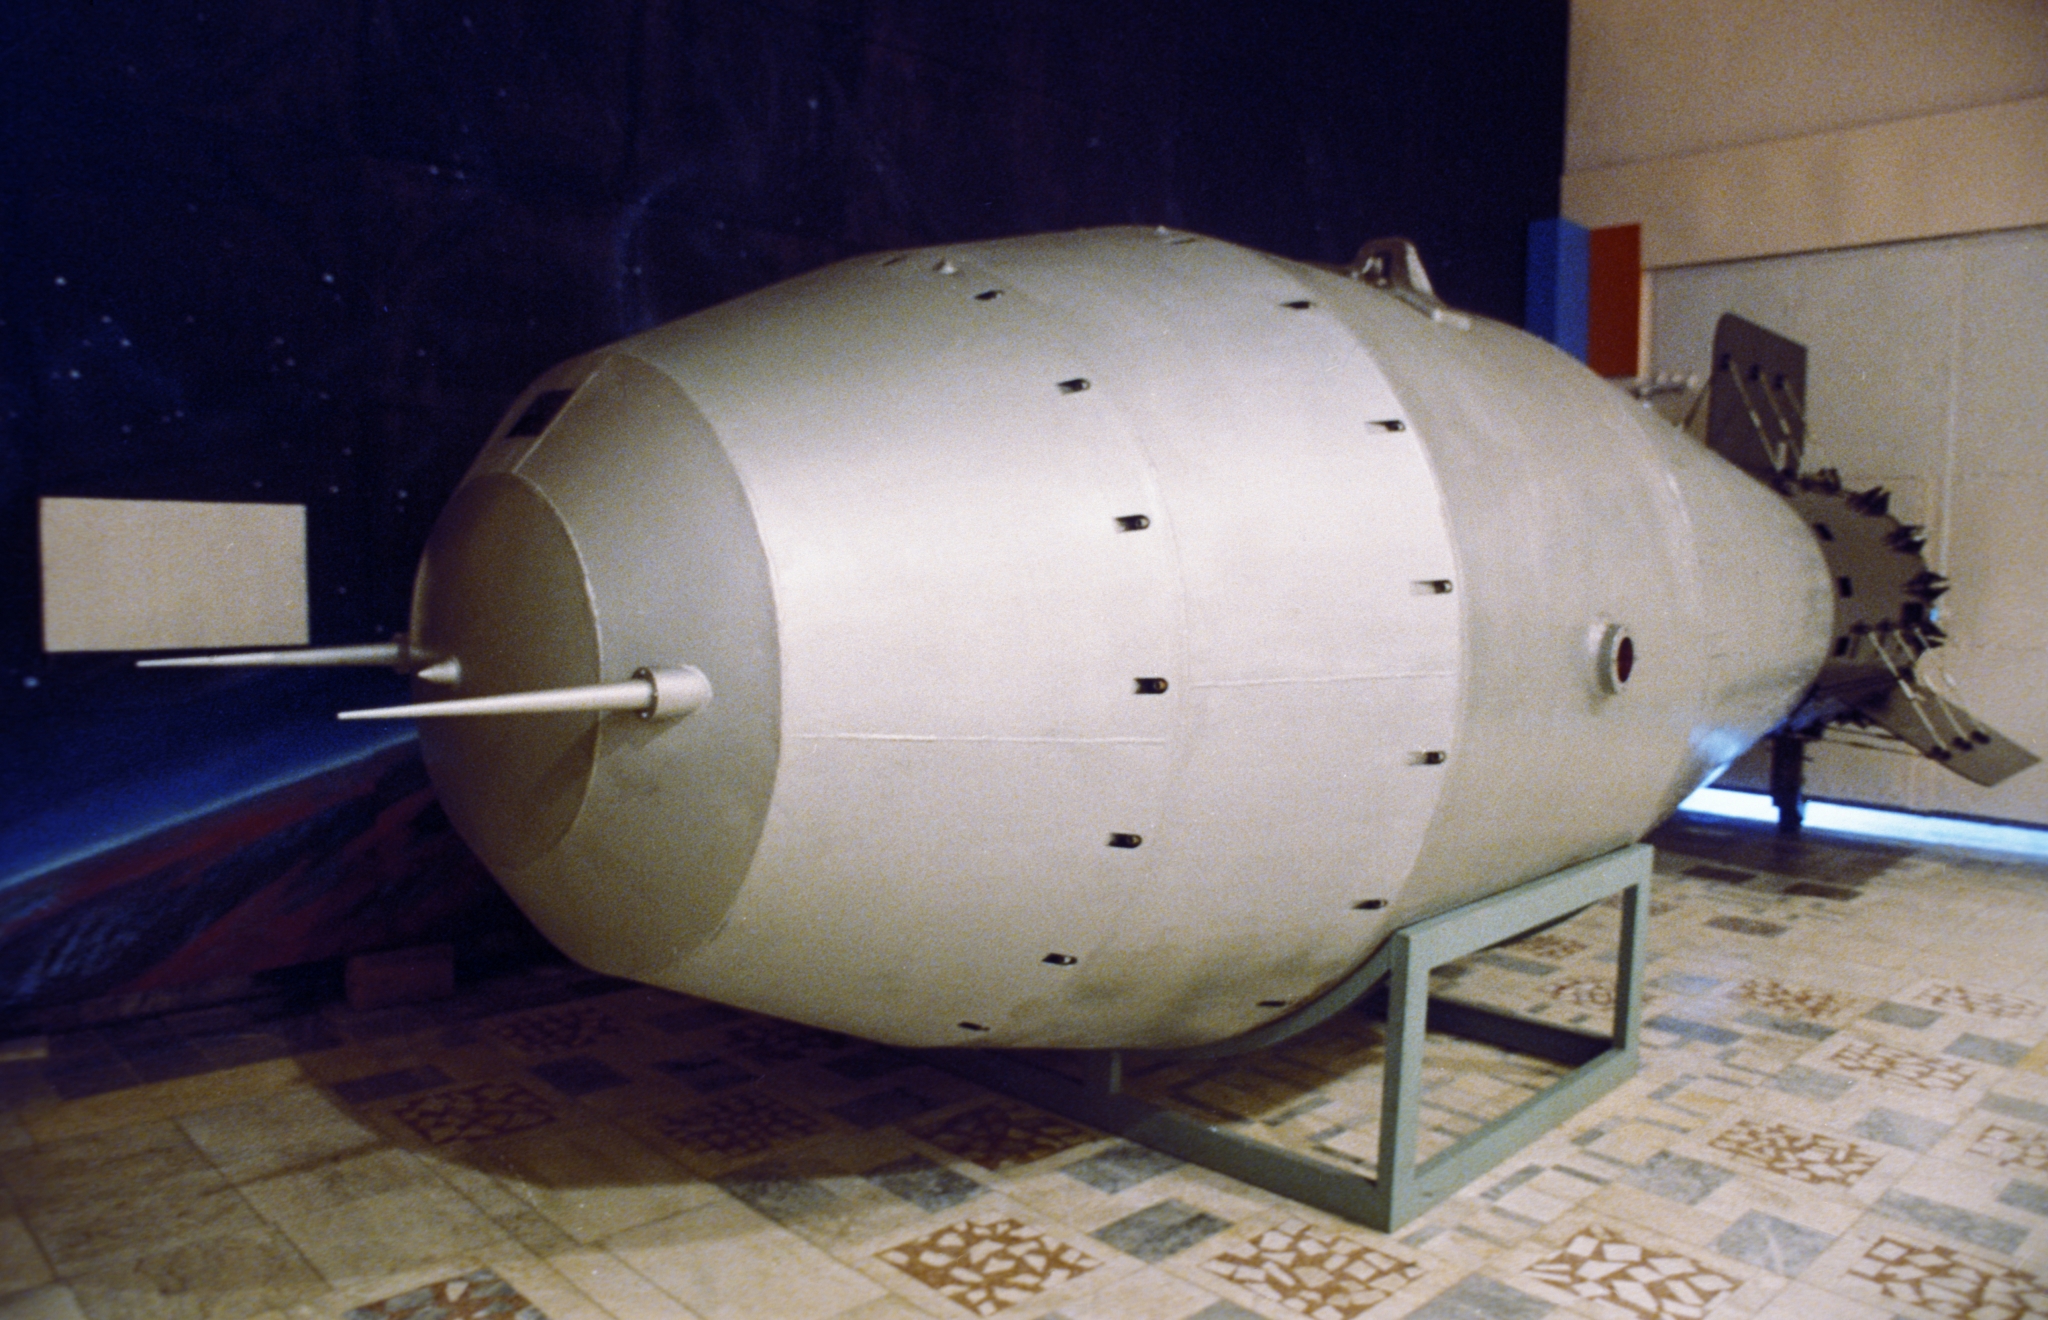 Ссср было создано атомное оружие. Советская атомная бомба 1949 Курчатов. Советской атомной бомбы РДС-1. Ядерная бомба РДС 1. Советская водородная бомба 1949.